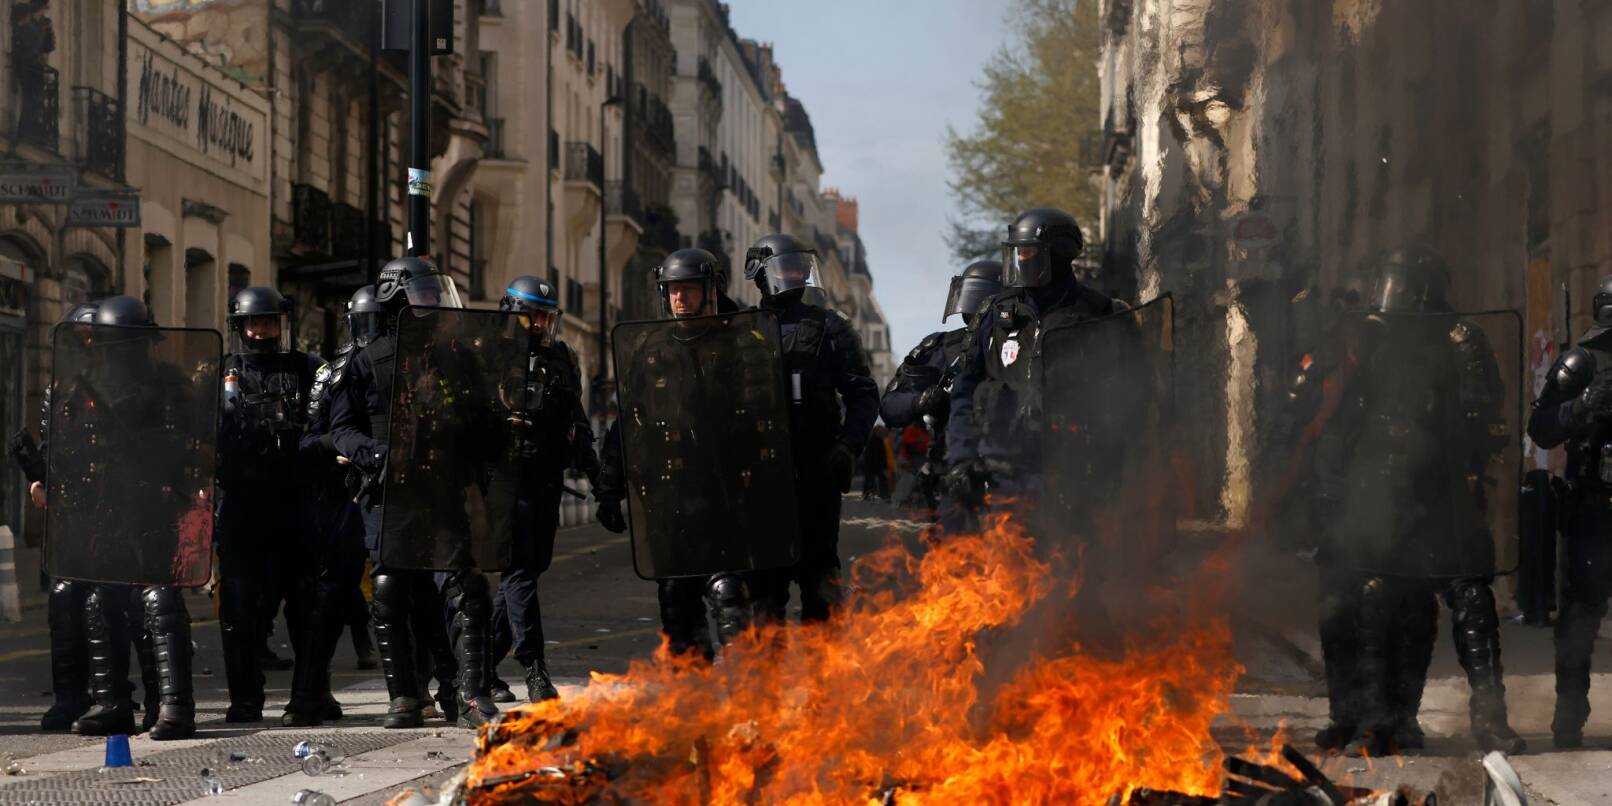 Bereitschaftspolizisten hinter einer brennenden Barrikade in Nantes.